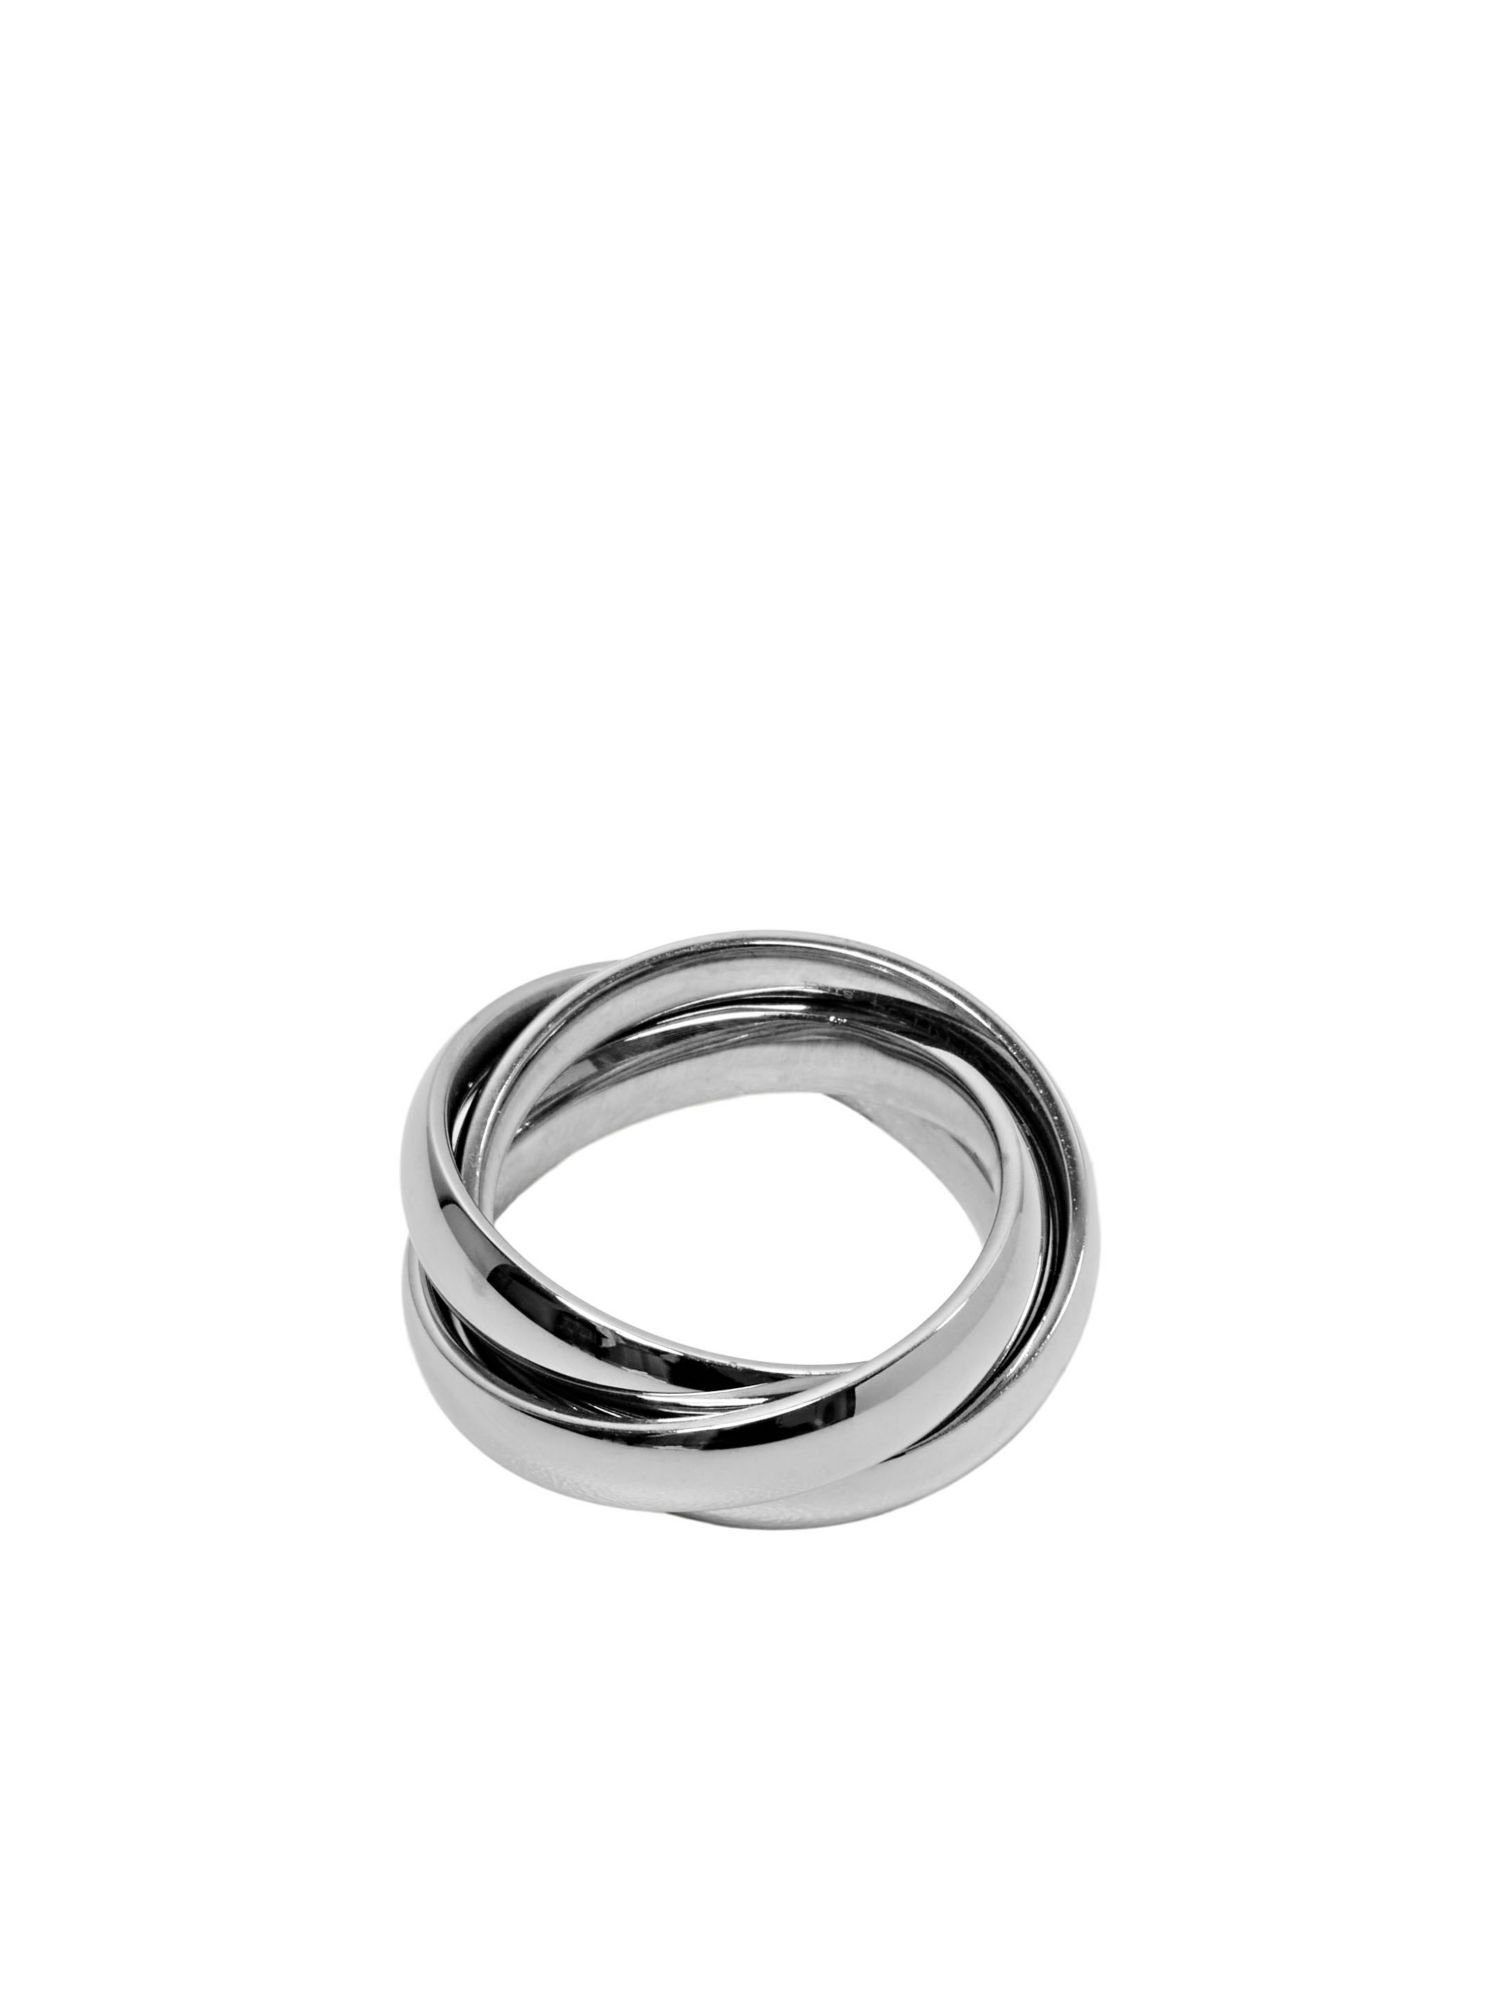 Trio-Ring Esprit aus Silberring Edelstahl